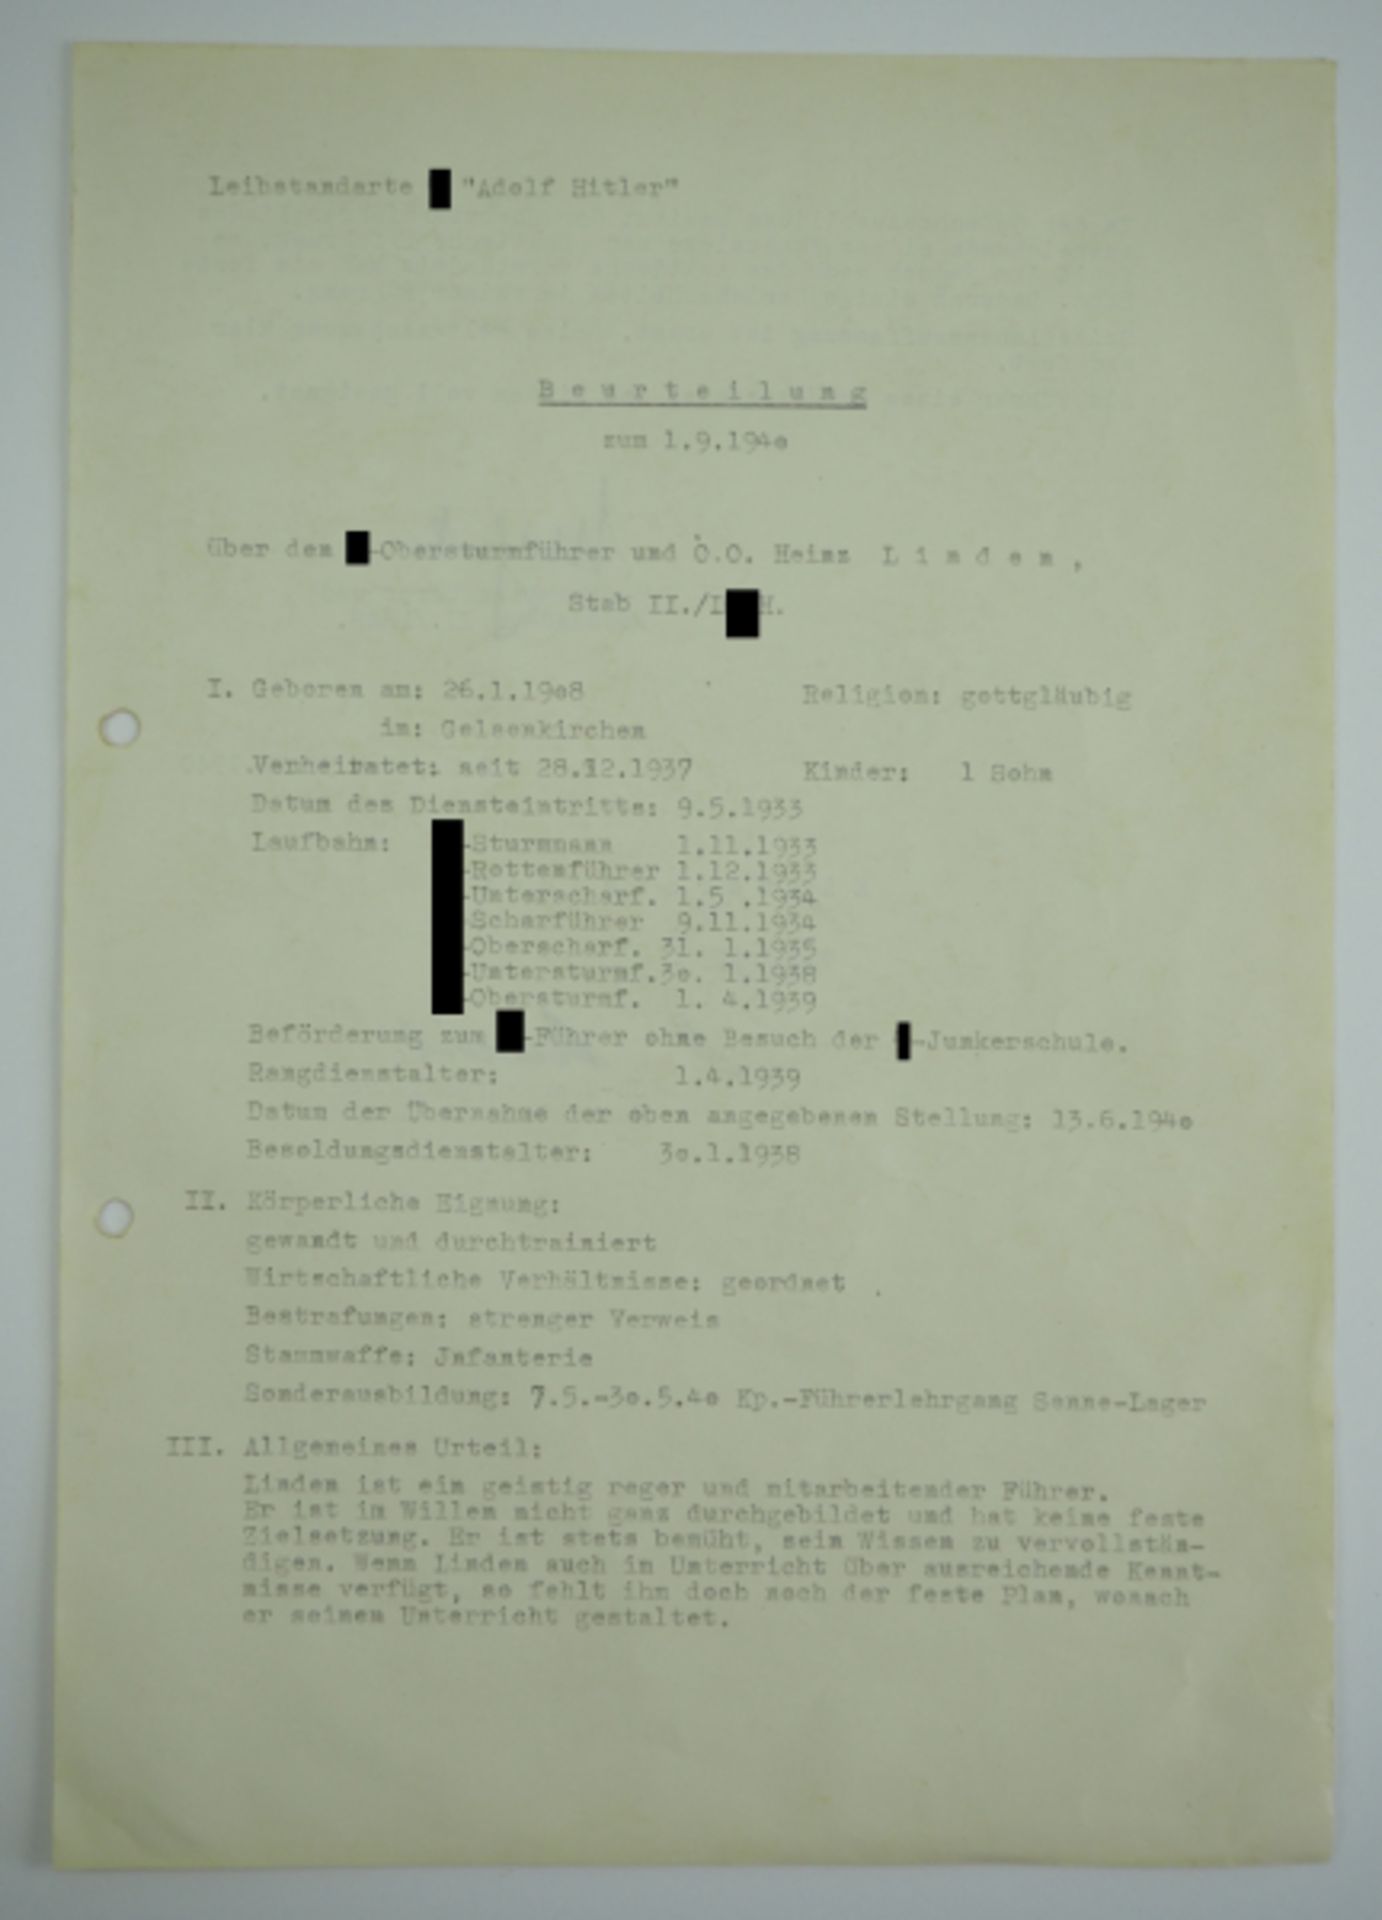 Mohnke, Wilhelm / Dietrich, Sepp.Beurteilung des SS-Obersturmführers Heinz Linden (DKiG) durch